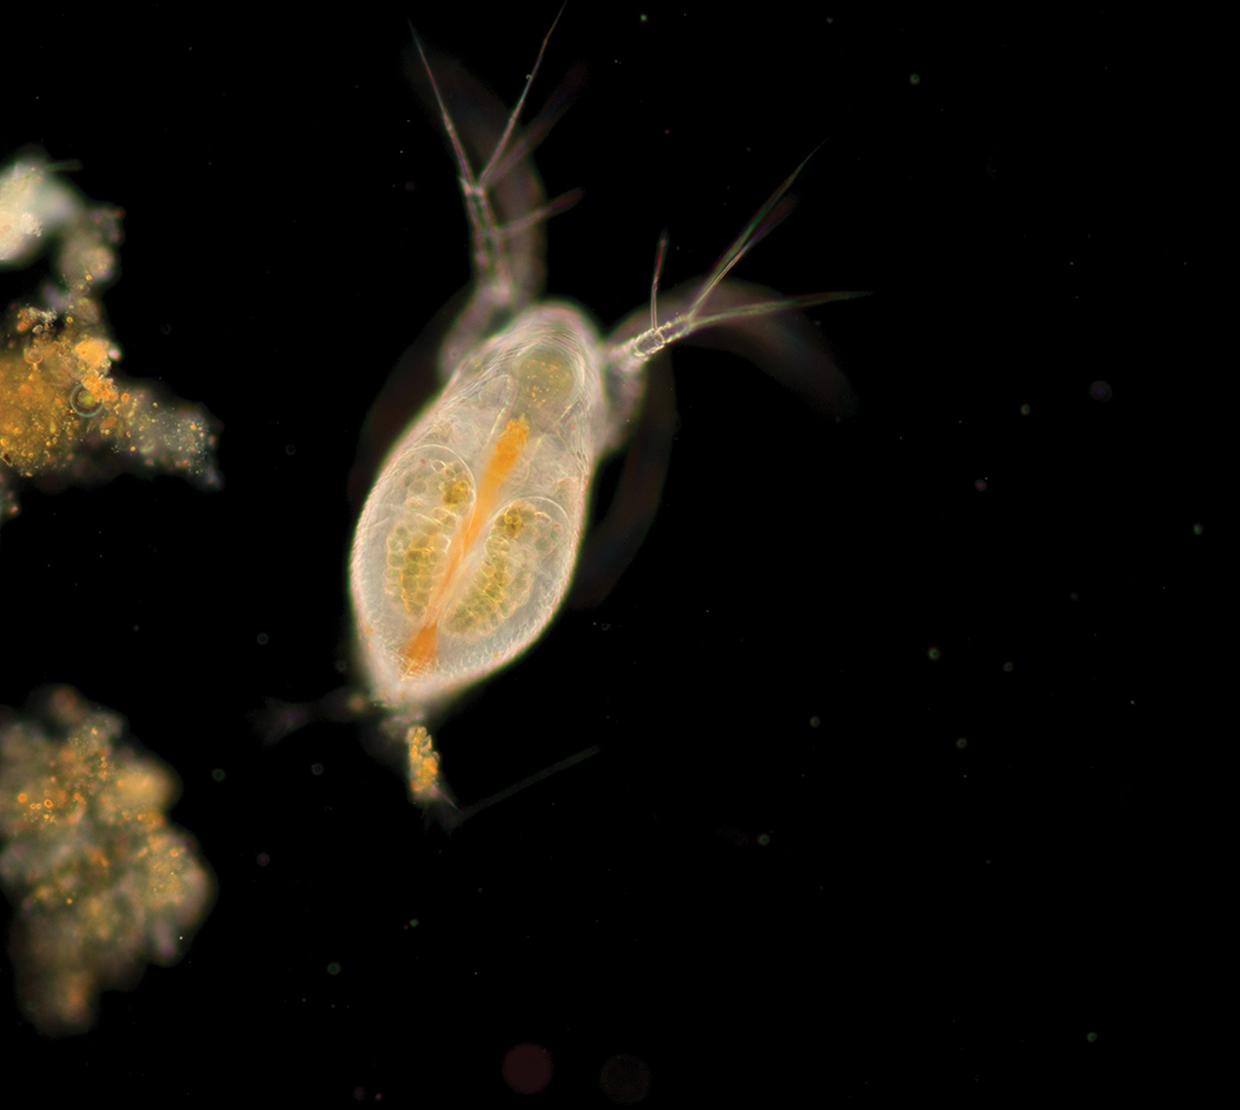 microscopic organism swimming through dark water